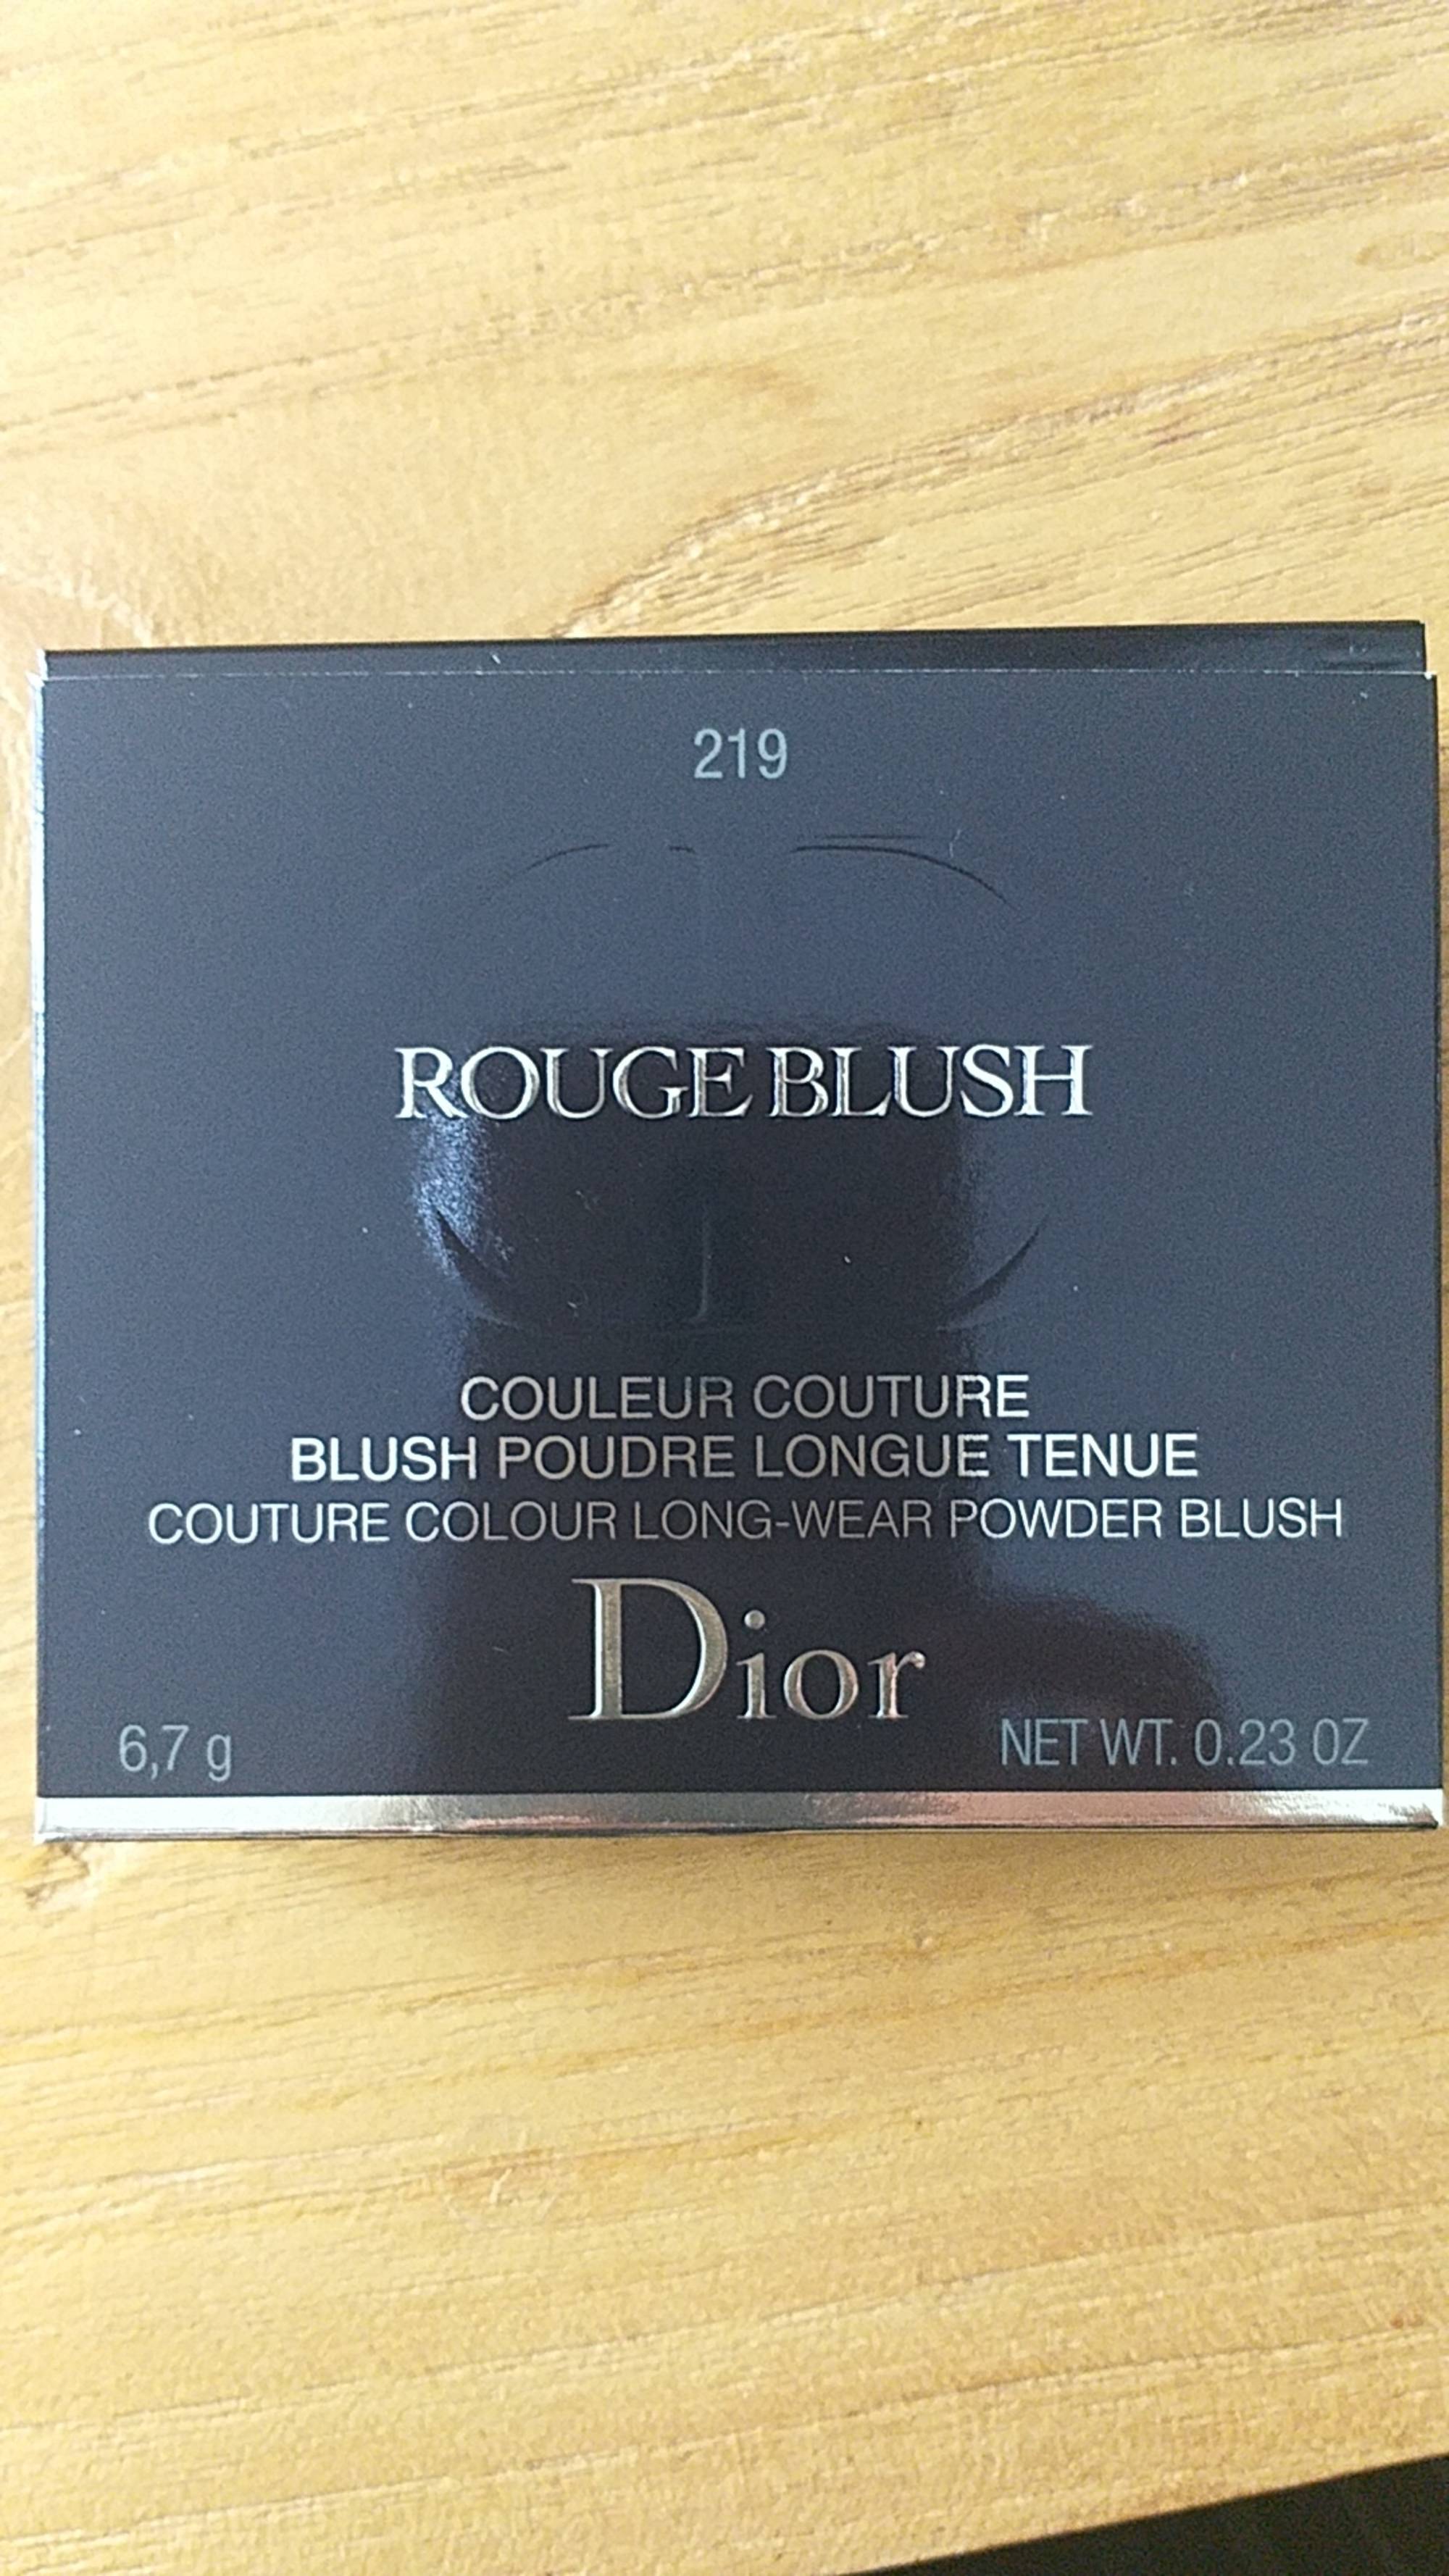 DIOR - 219 Rouge blush - Blush poudre longue tenue